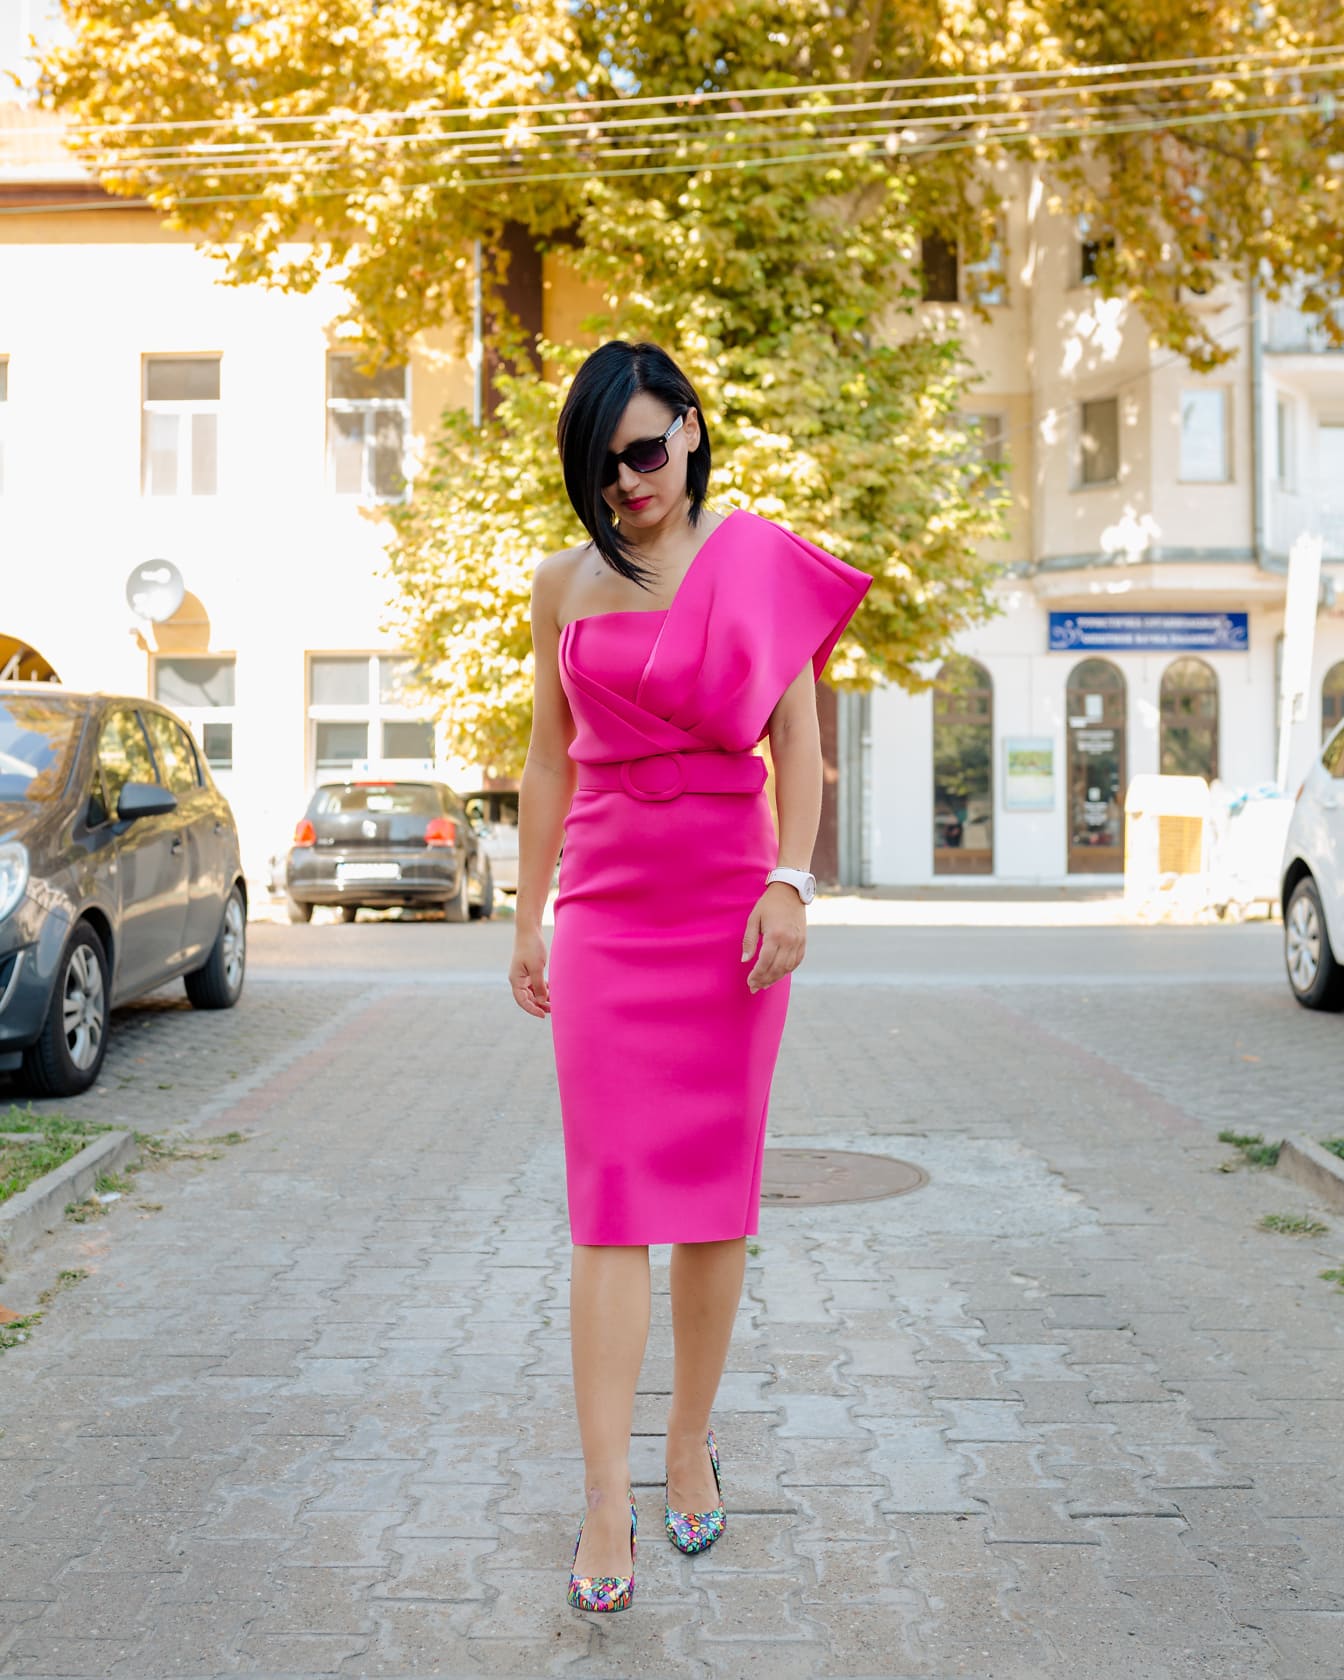 Elegant kvinna i en fashionabla rosa klänning som går på en gata